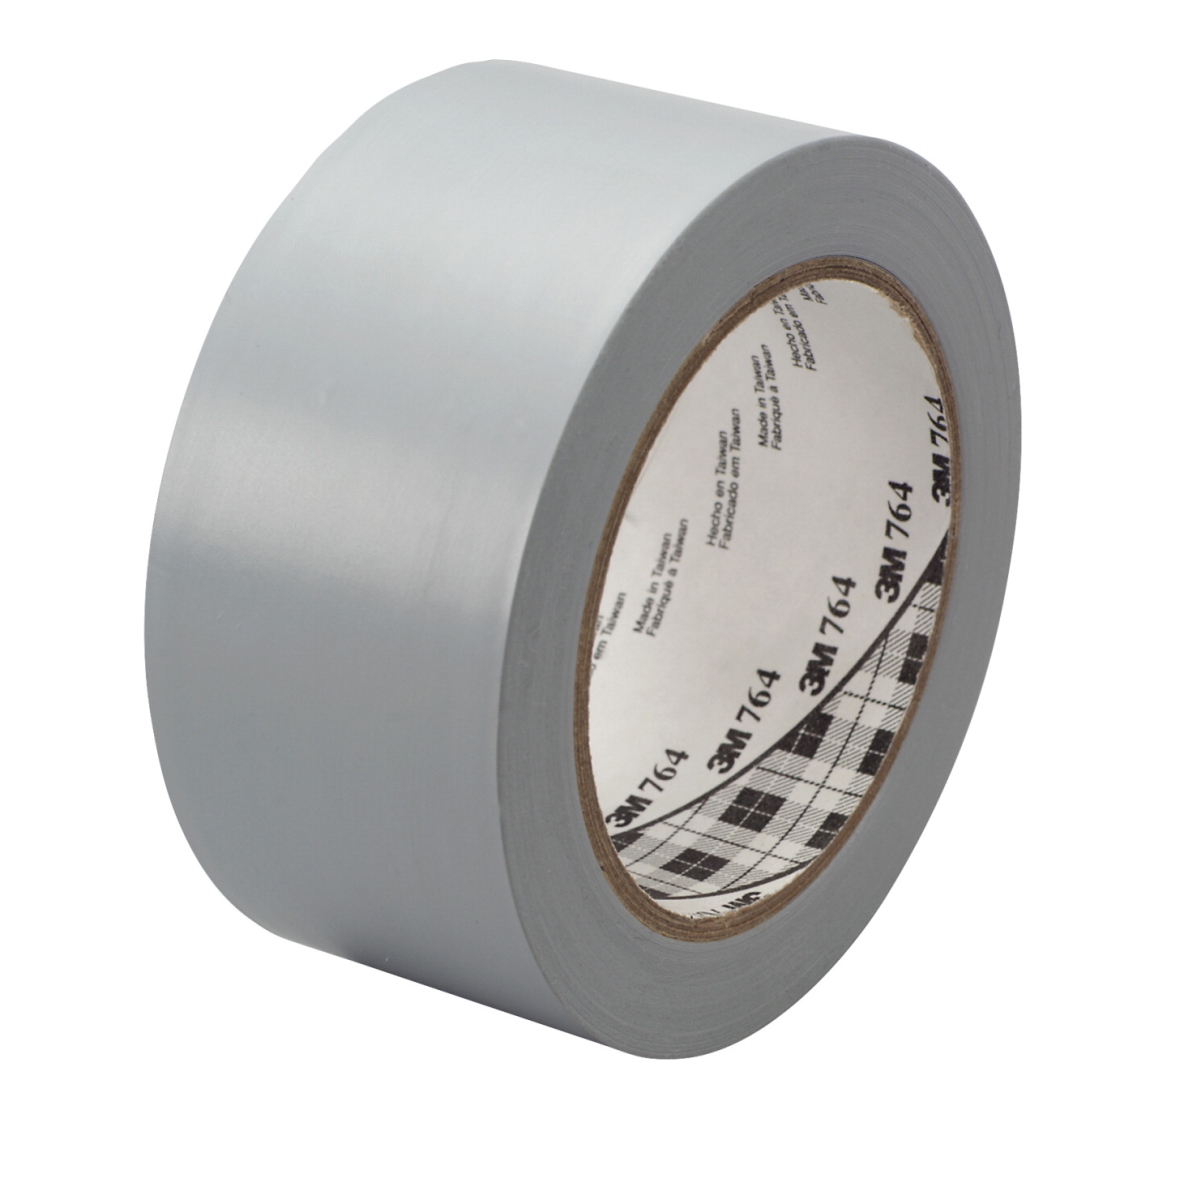 General Purpose Wear Resistant Floor Marking Tape Roll, 2 In. X 36 Yard, Vinyl - Grey